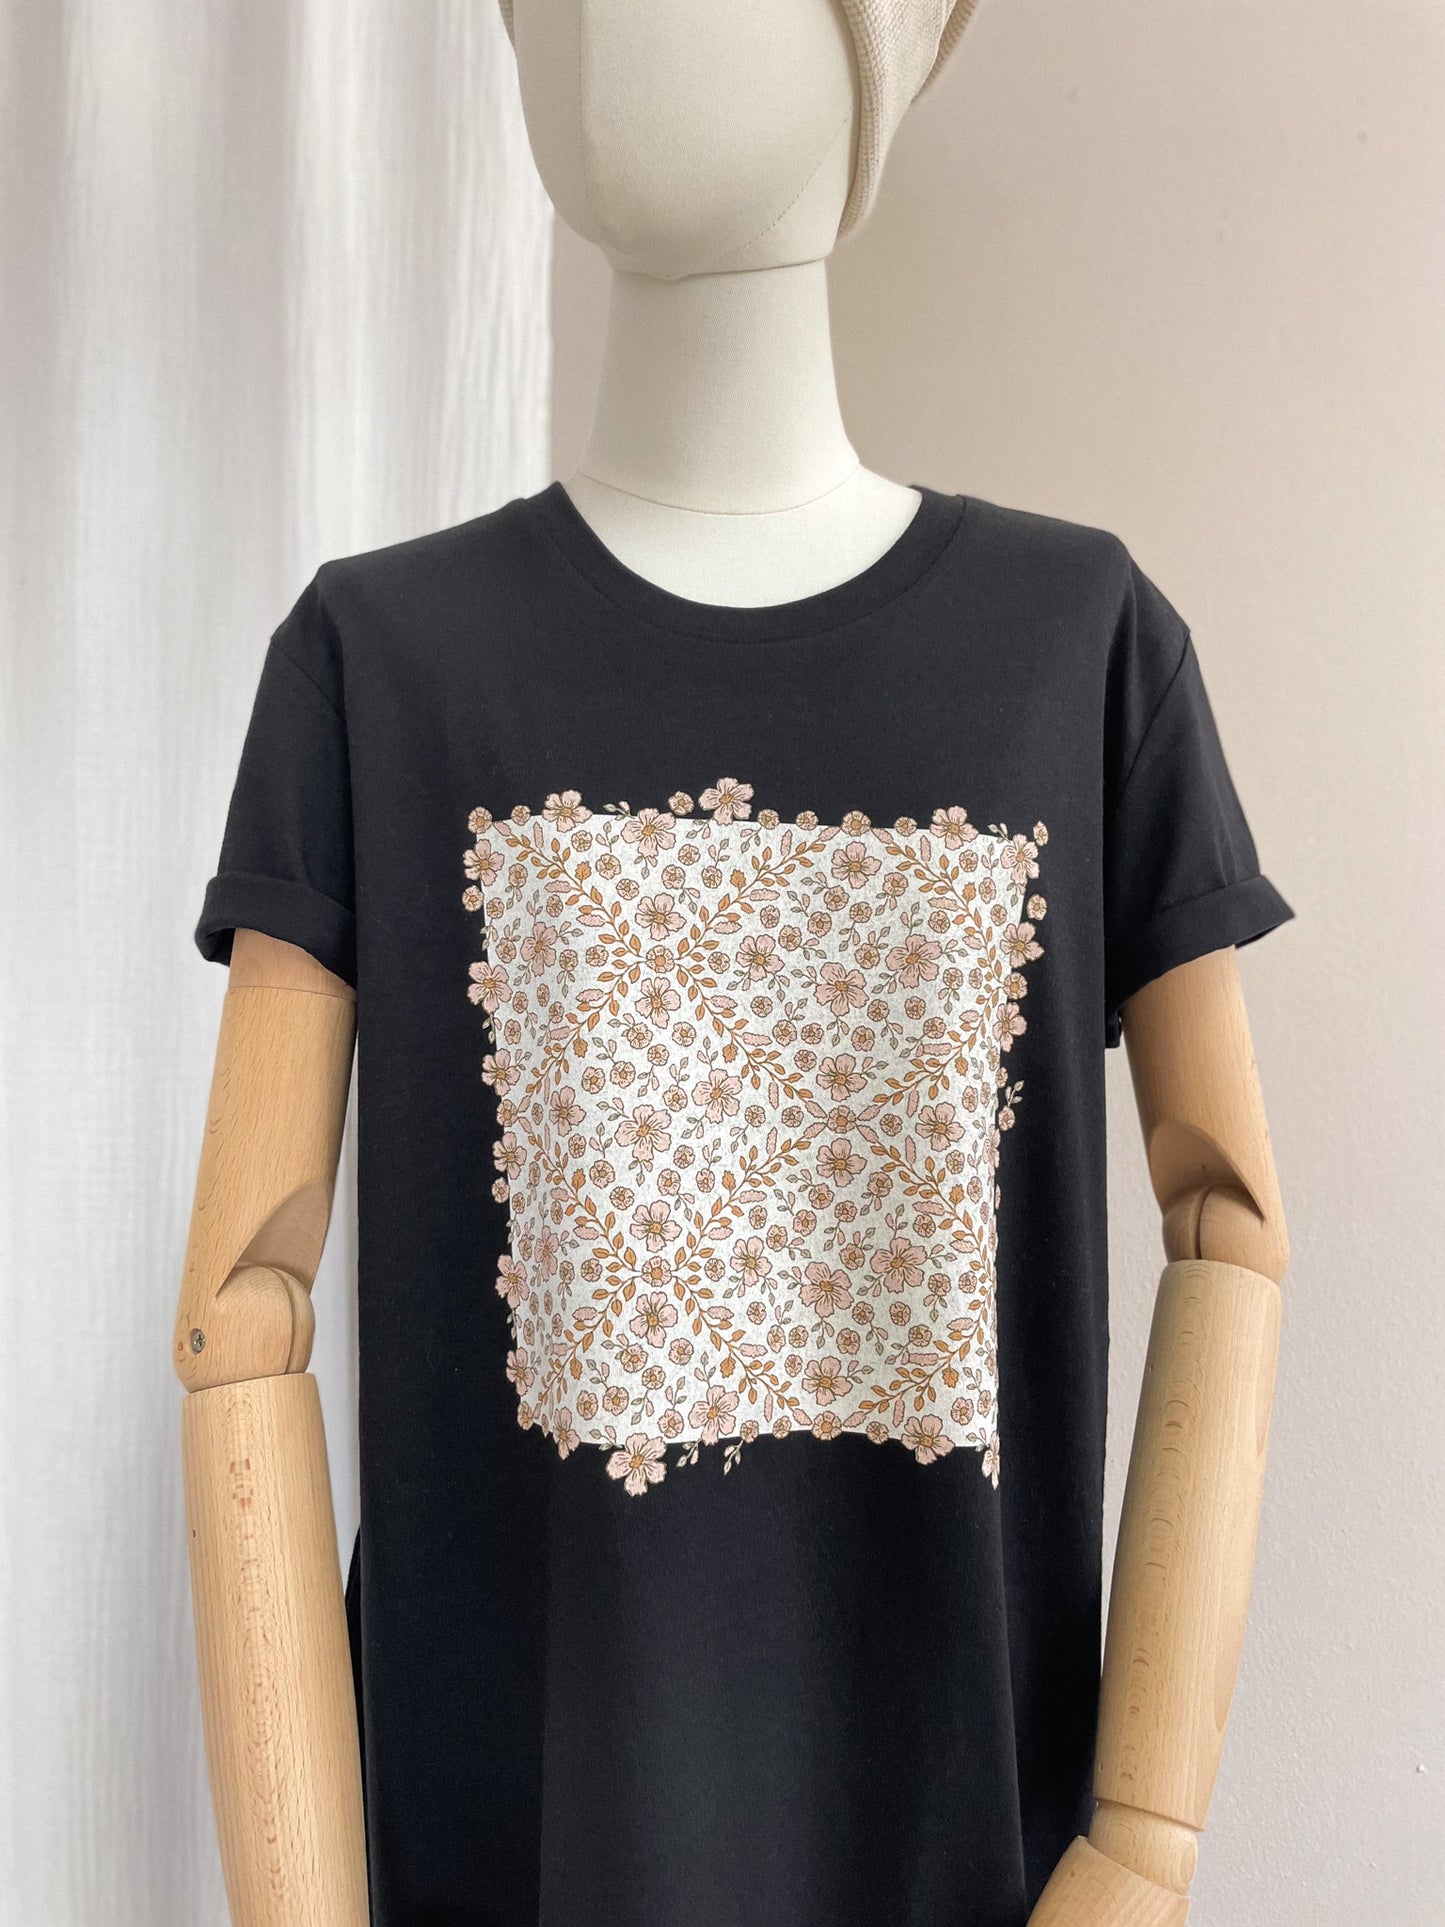 T-shirt dress / floral garland / black